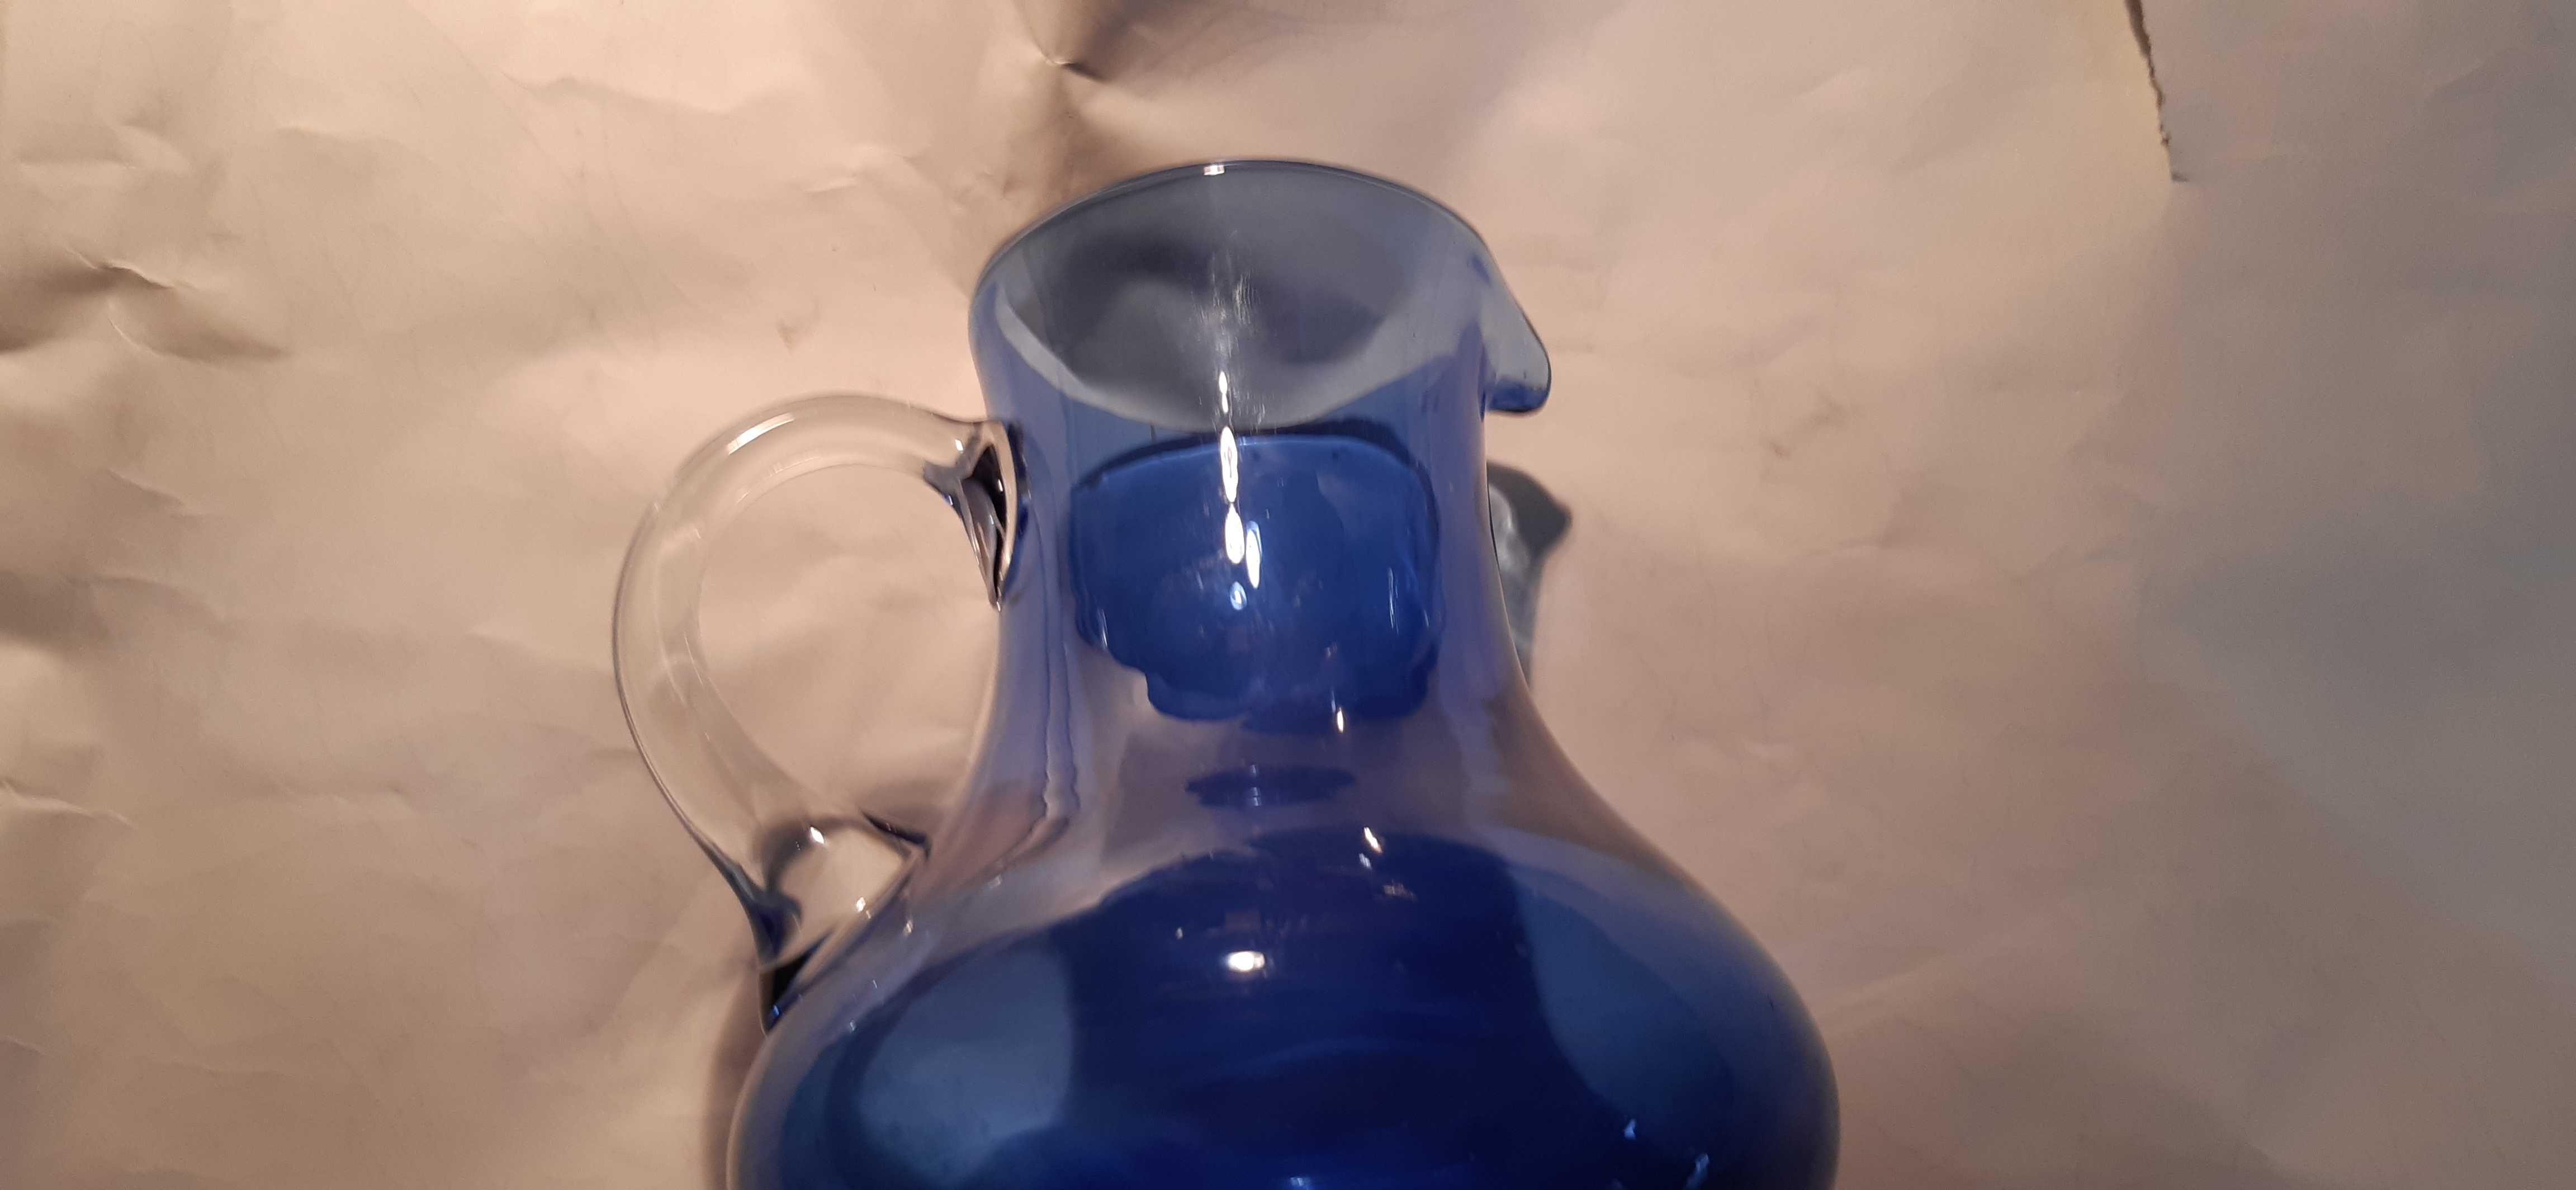 stary niebieski dzbanek, wazon kolorowe szkło